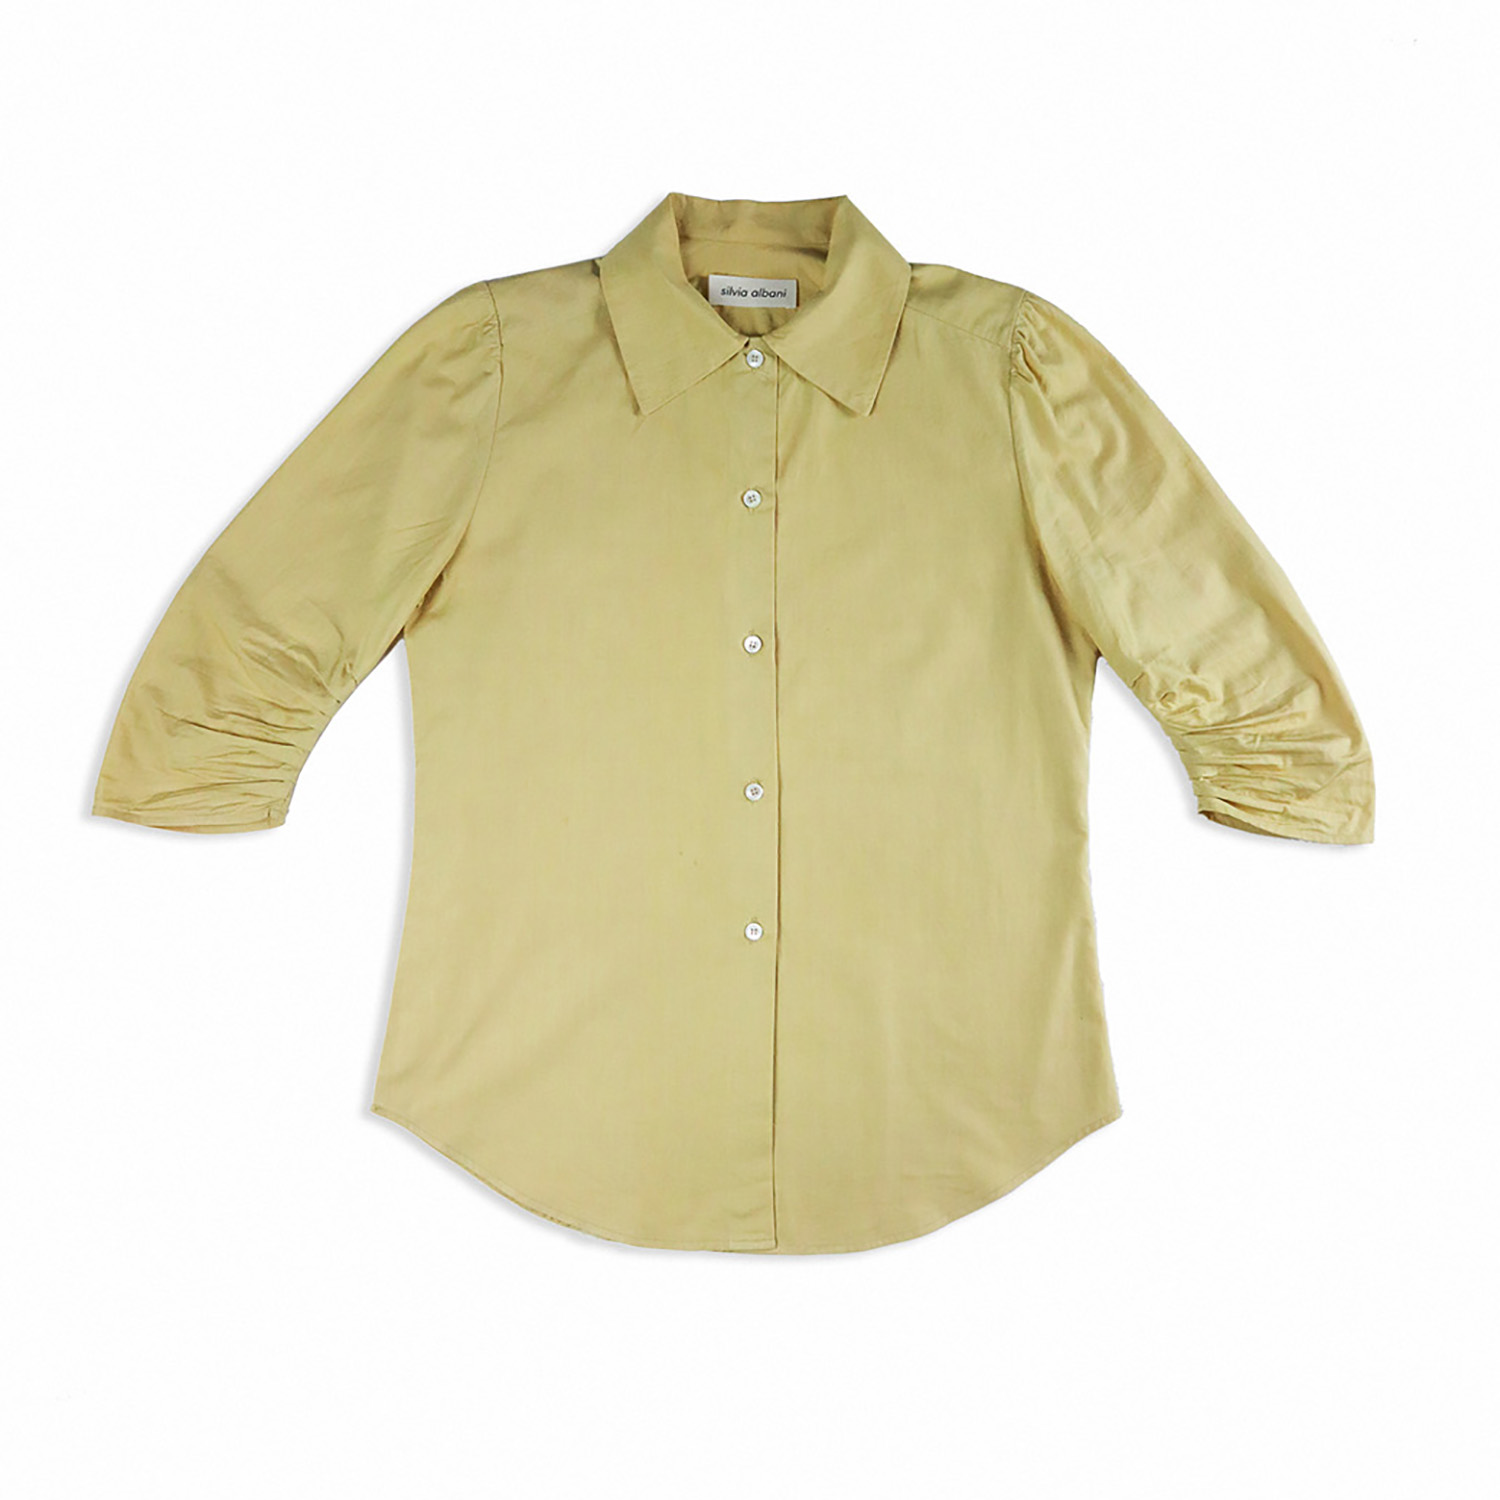 Daily regular shirt - golden beige